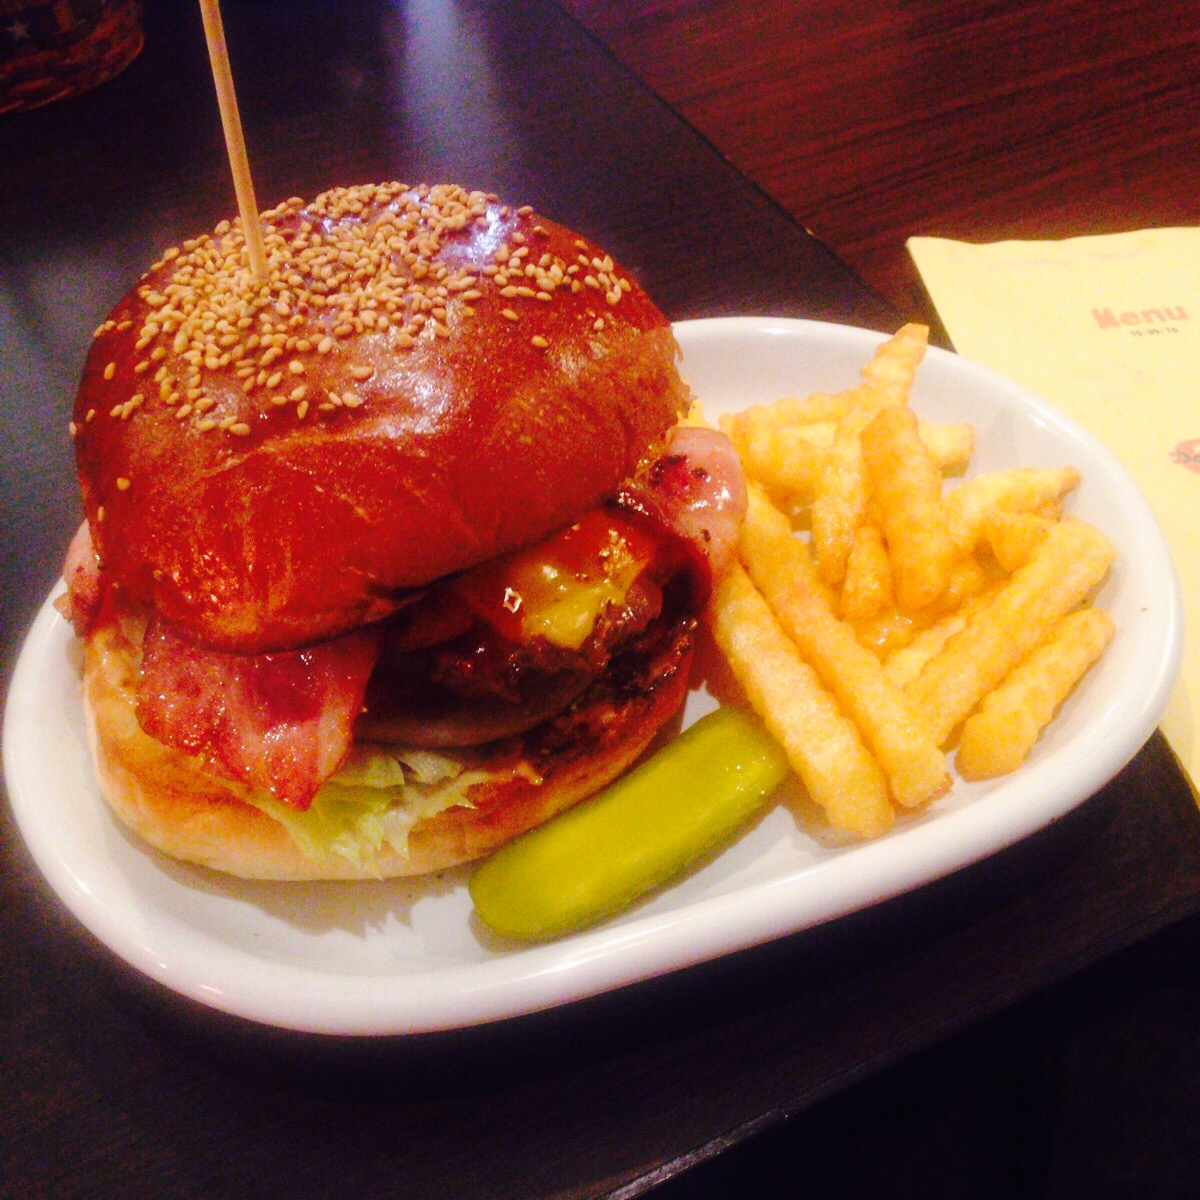 雰囲気が良く、味・ボリューム抜群の大人気ハンバーガーカフェ『66(ダブルシックス)』(千葉県柏市)